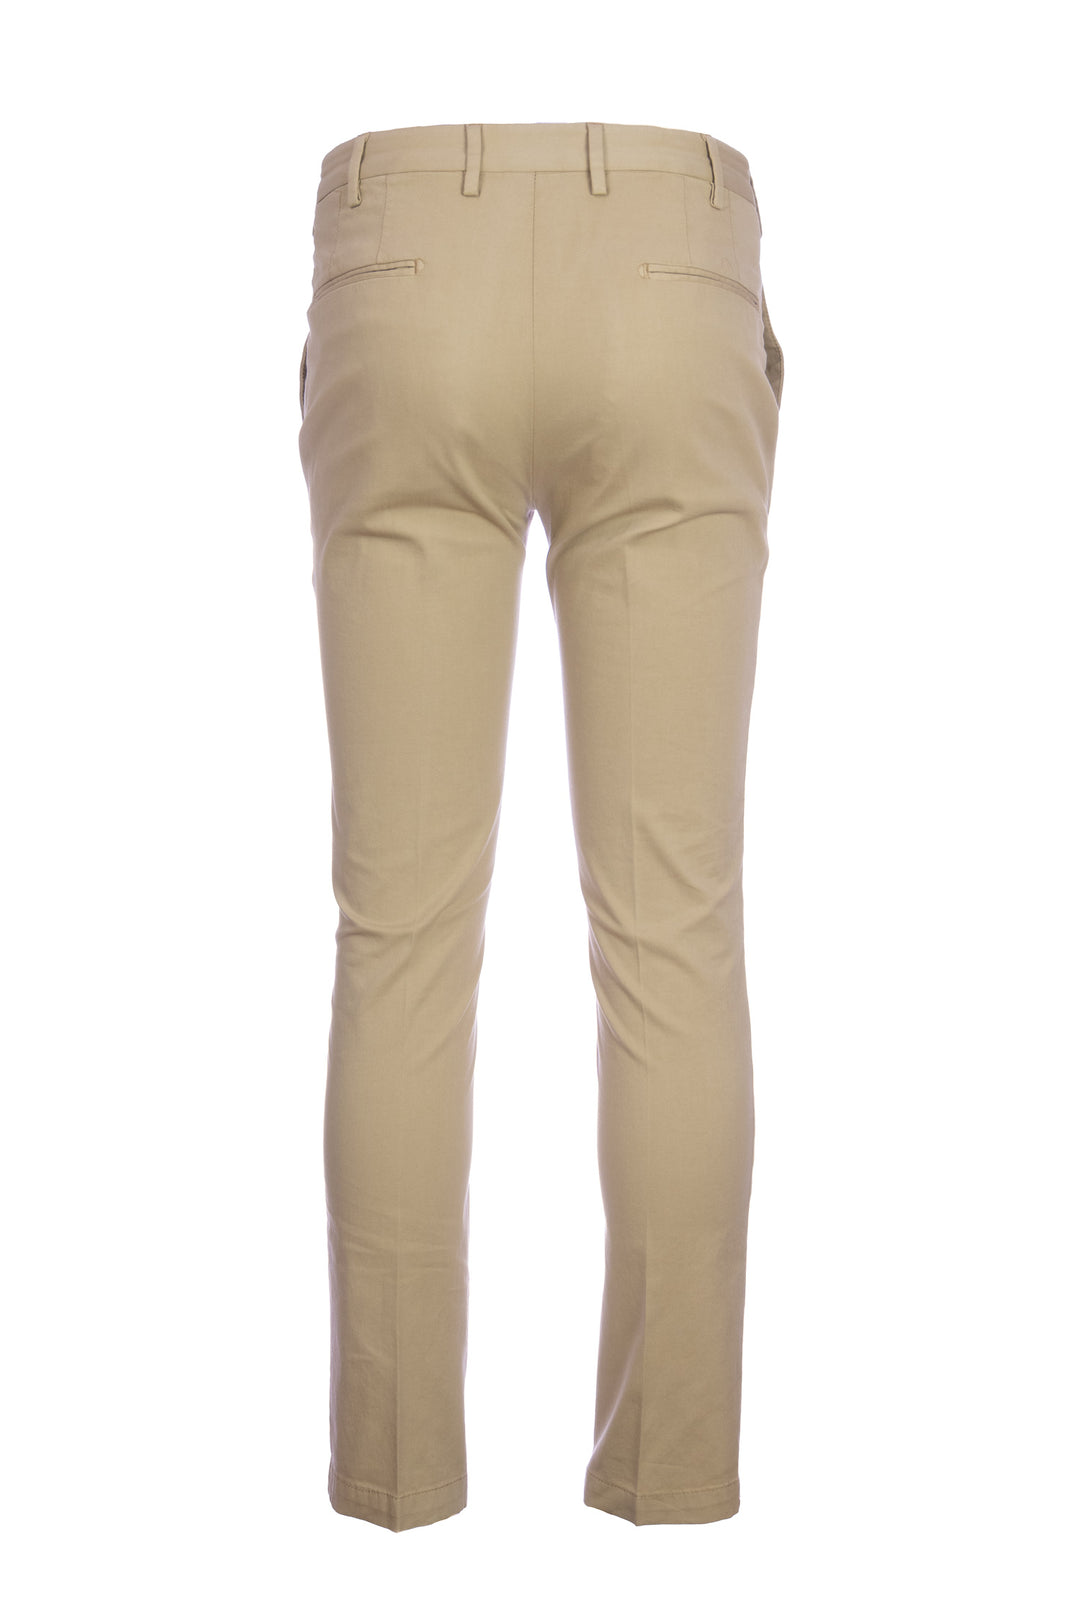 DEVORE Pantalone cammello in cotone stretch con vita elastica - Mancinelli 1954